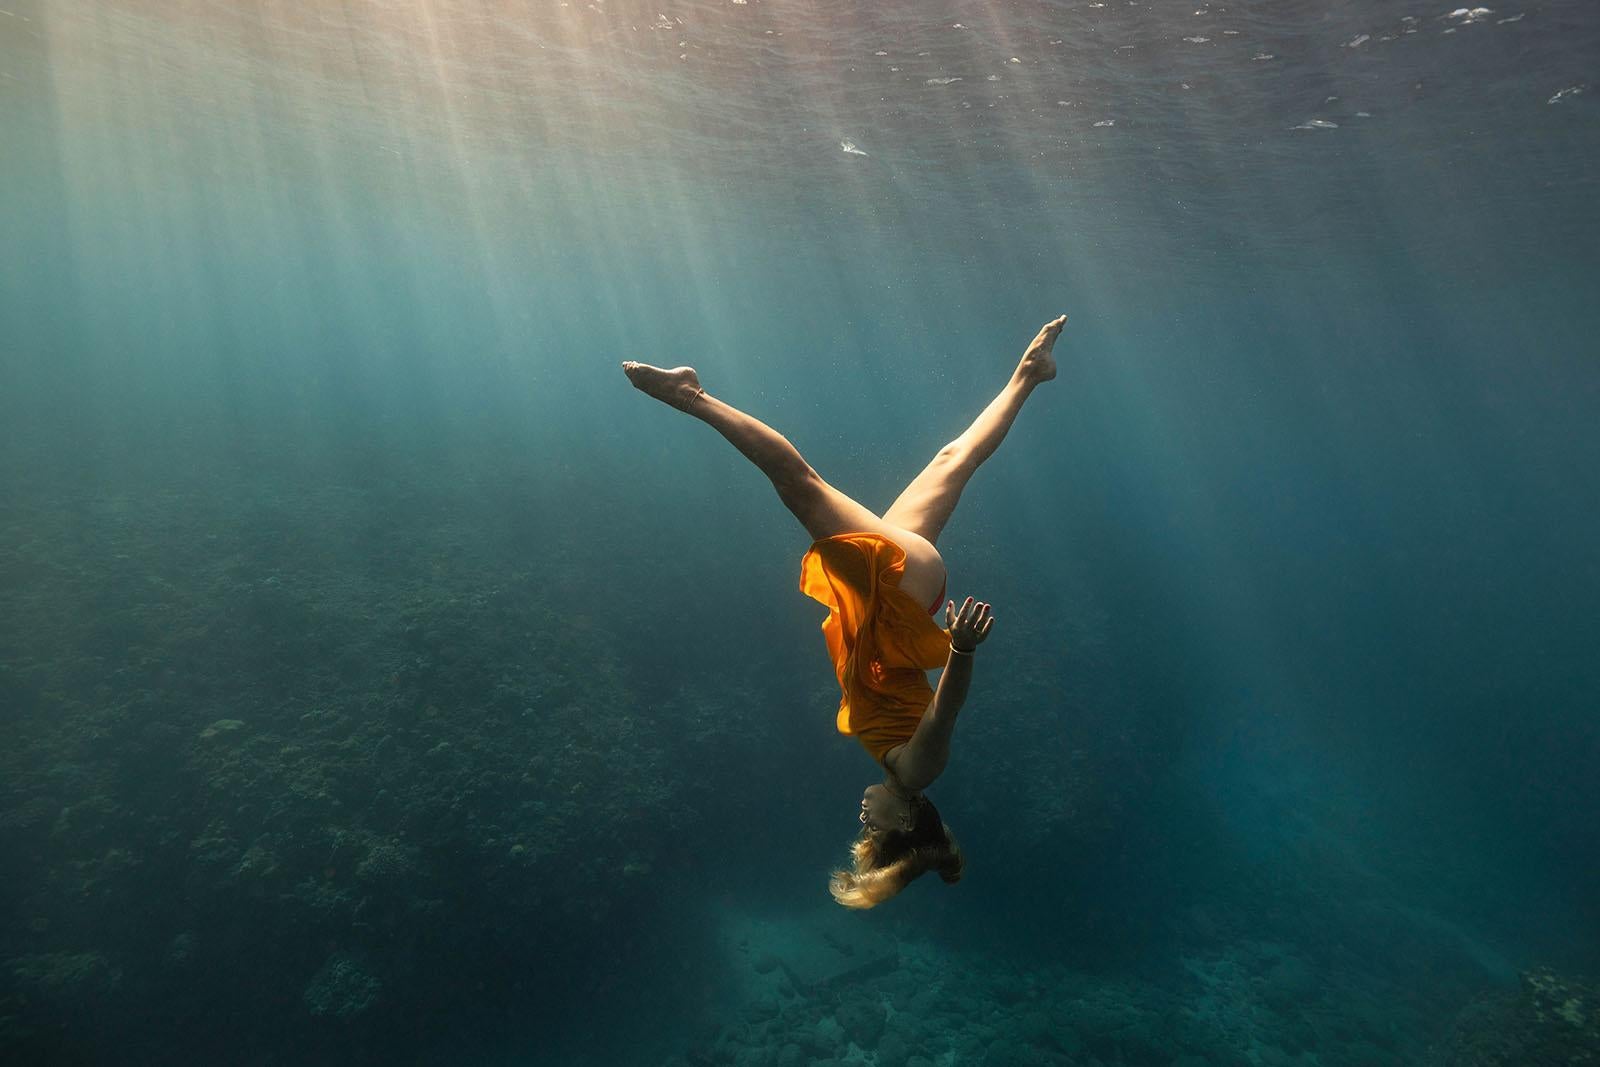 Grande photo en couleur « Synchronised swimming in the Blue » (Plonger dans le bleu) - Impression d'art - Bleu Color Photograph par Olivier Borde